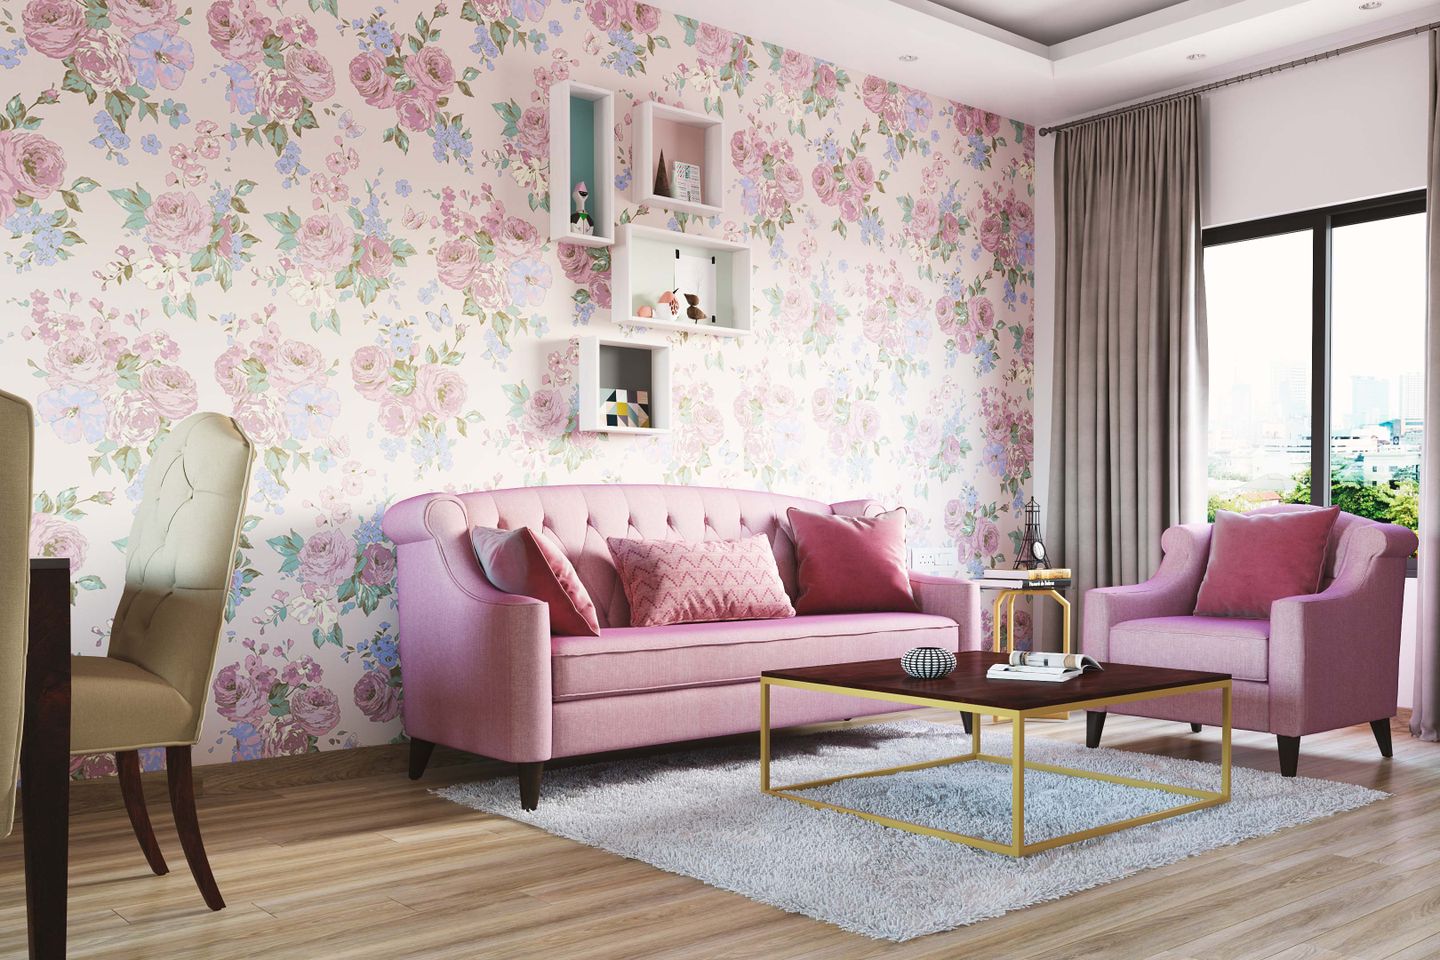 Living Room Pink Floral Wallpaper Design - Livspace